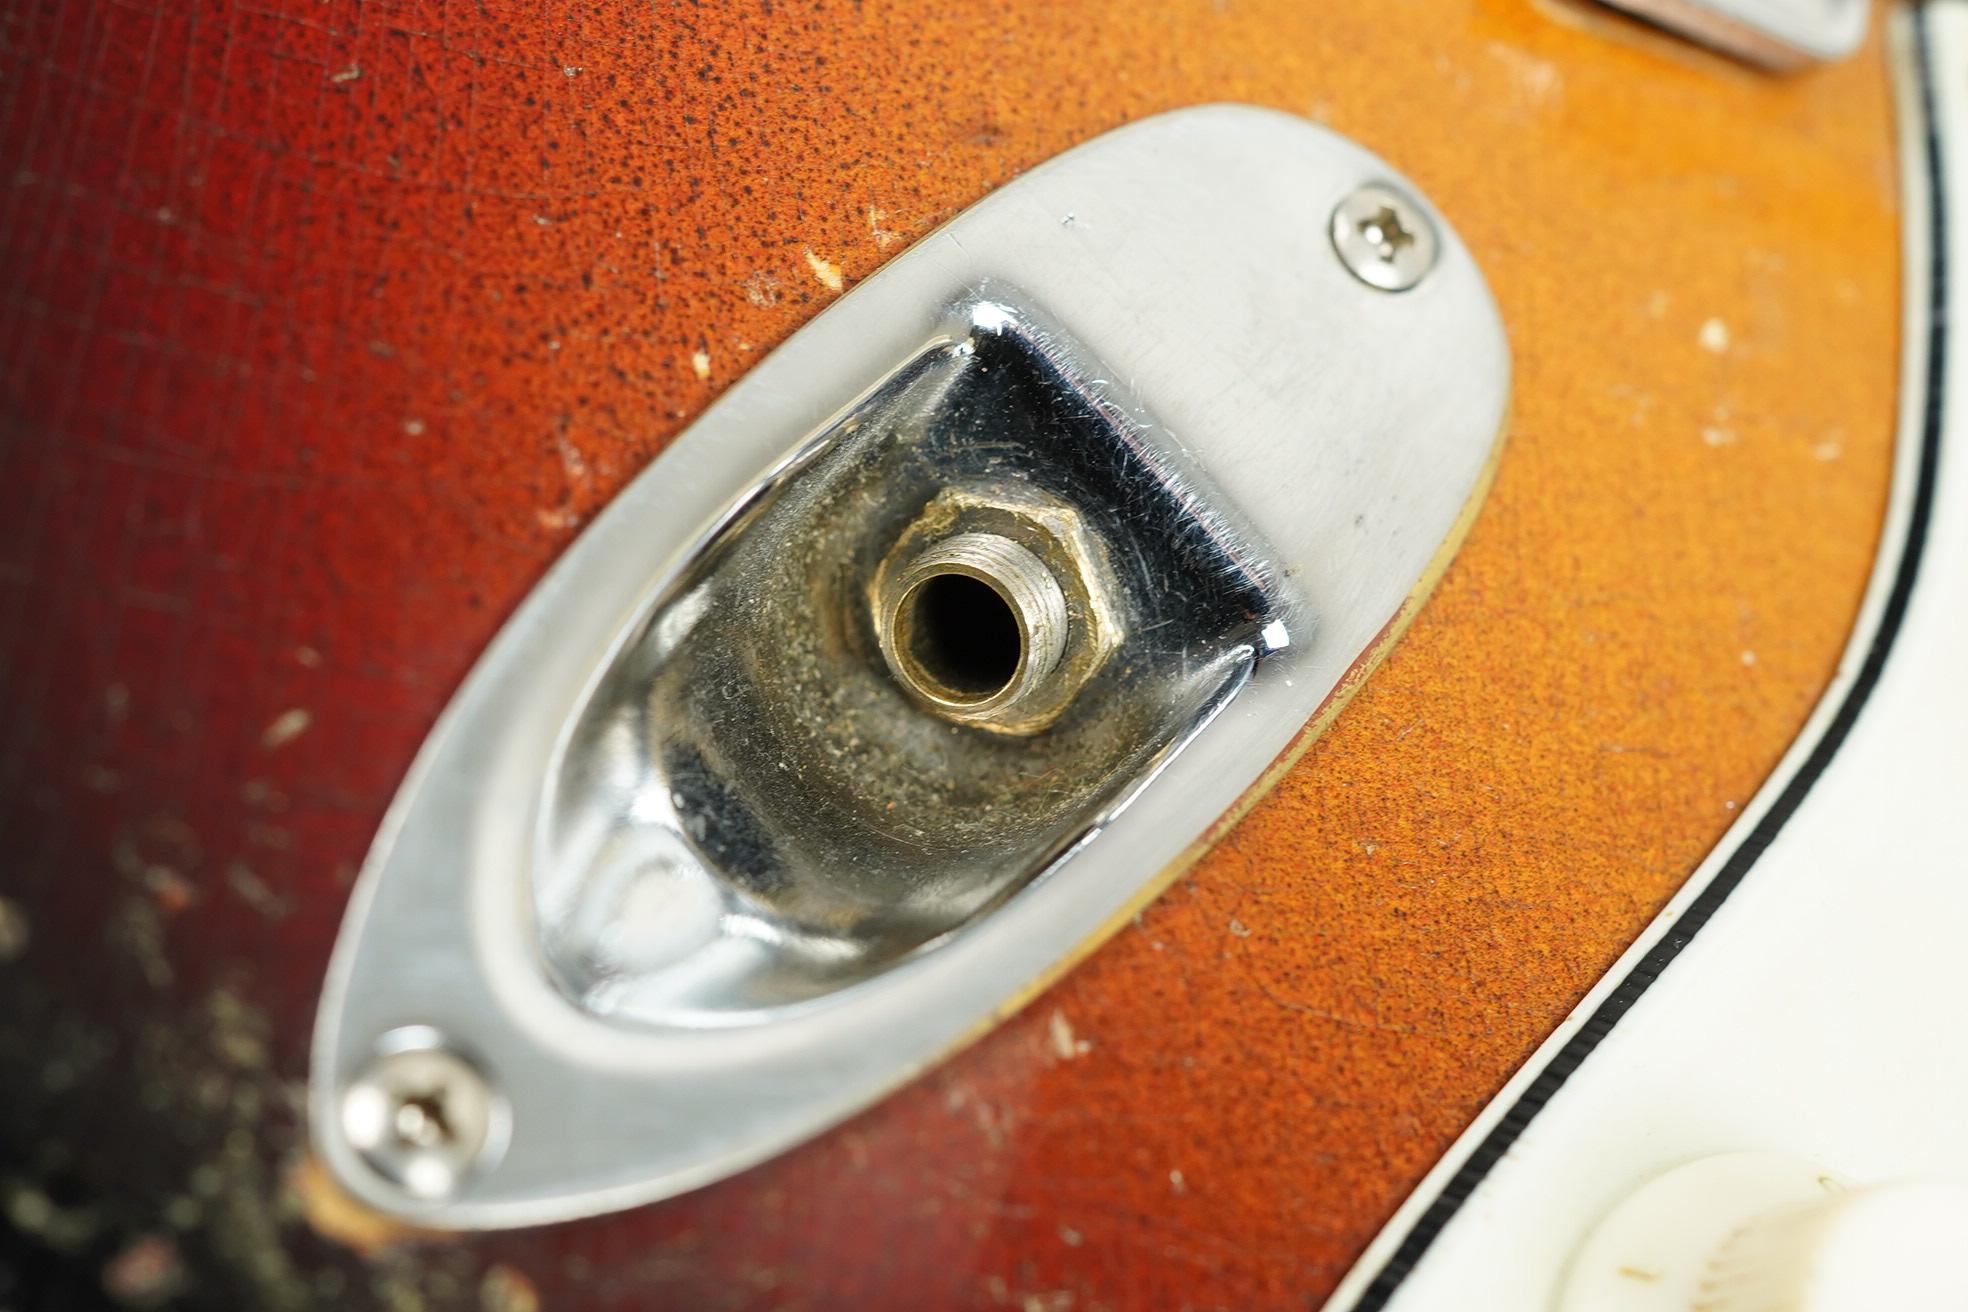 1962 Fender Stratocaster + Selmer Case